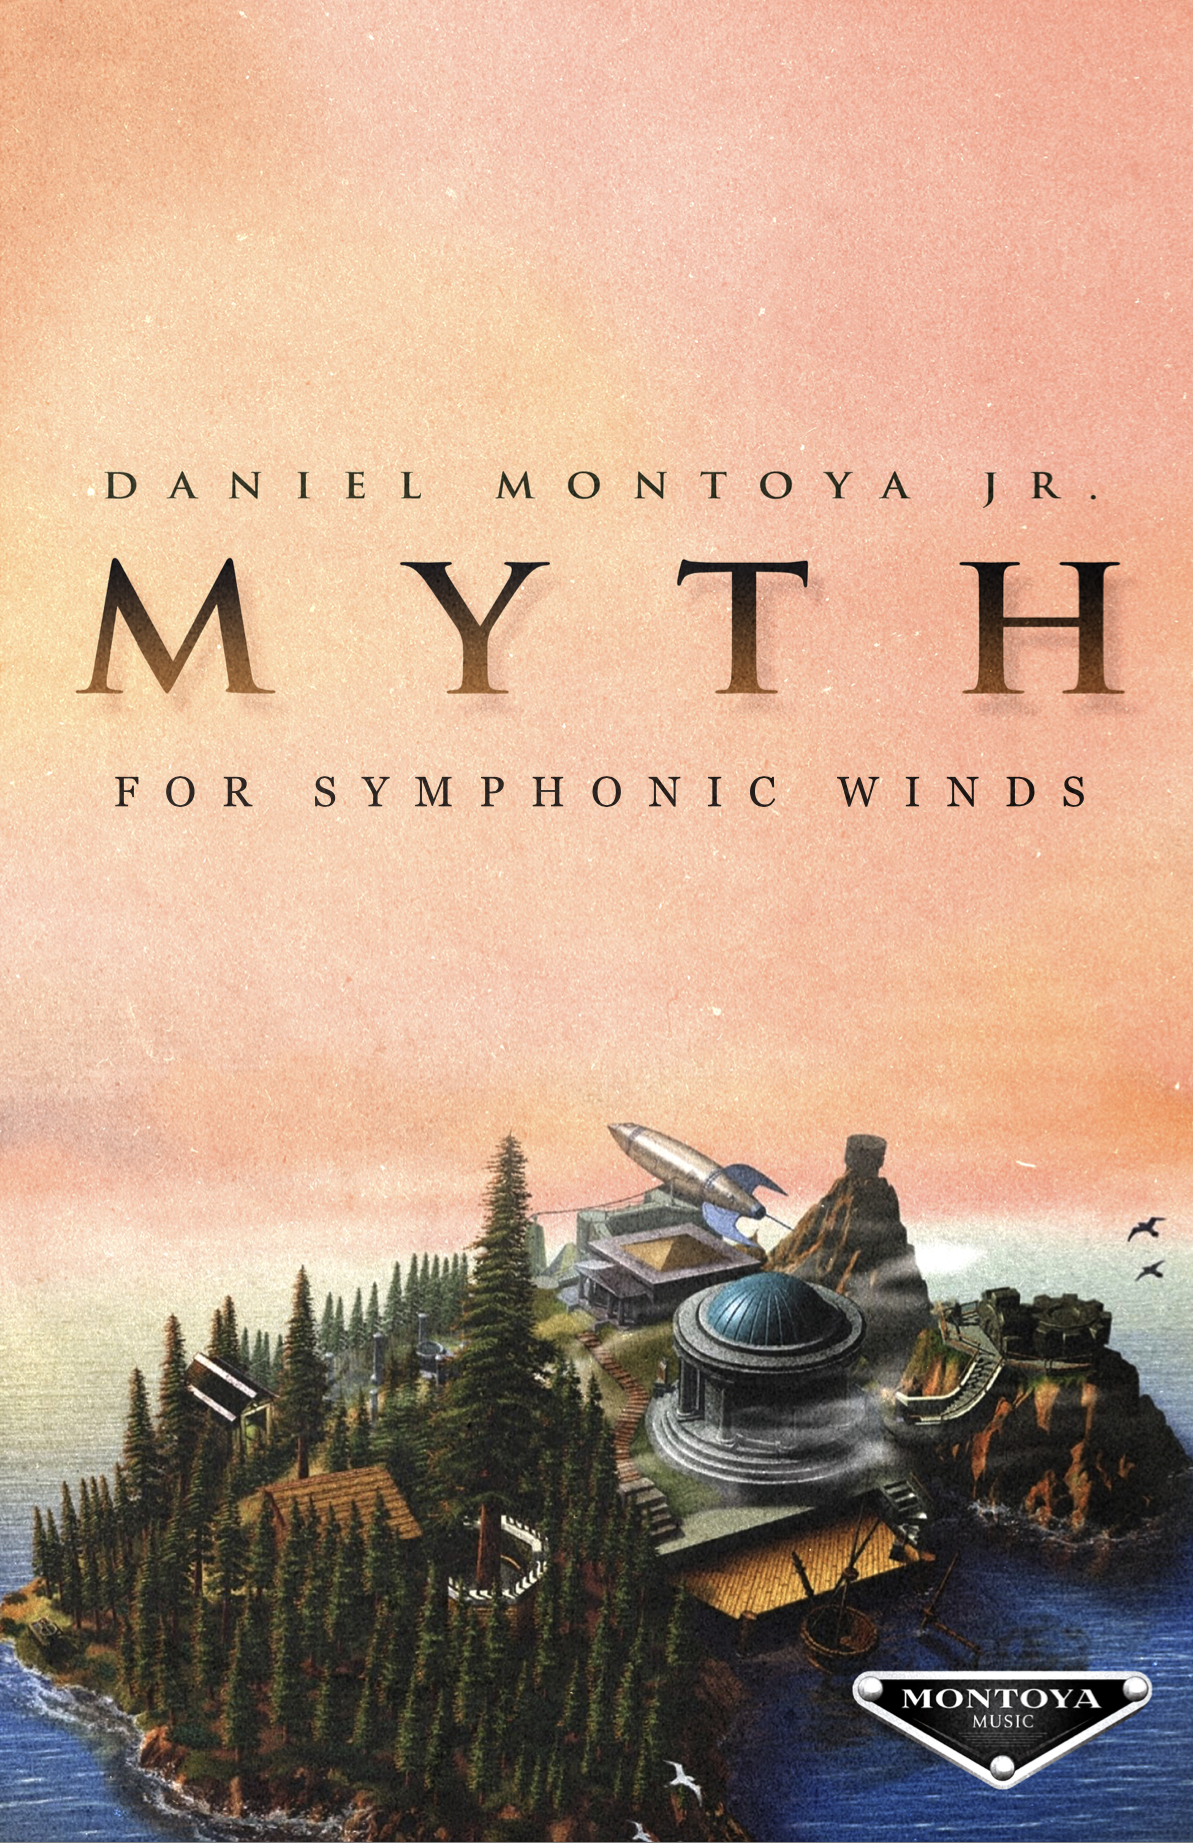 Myth by Daniel Montoya Jr.